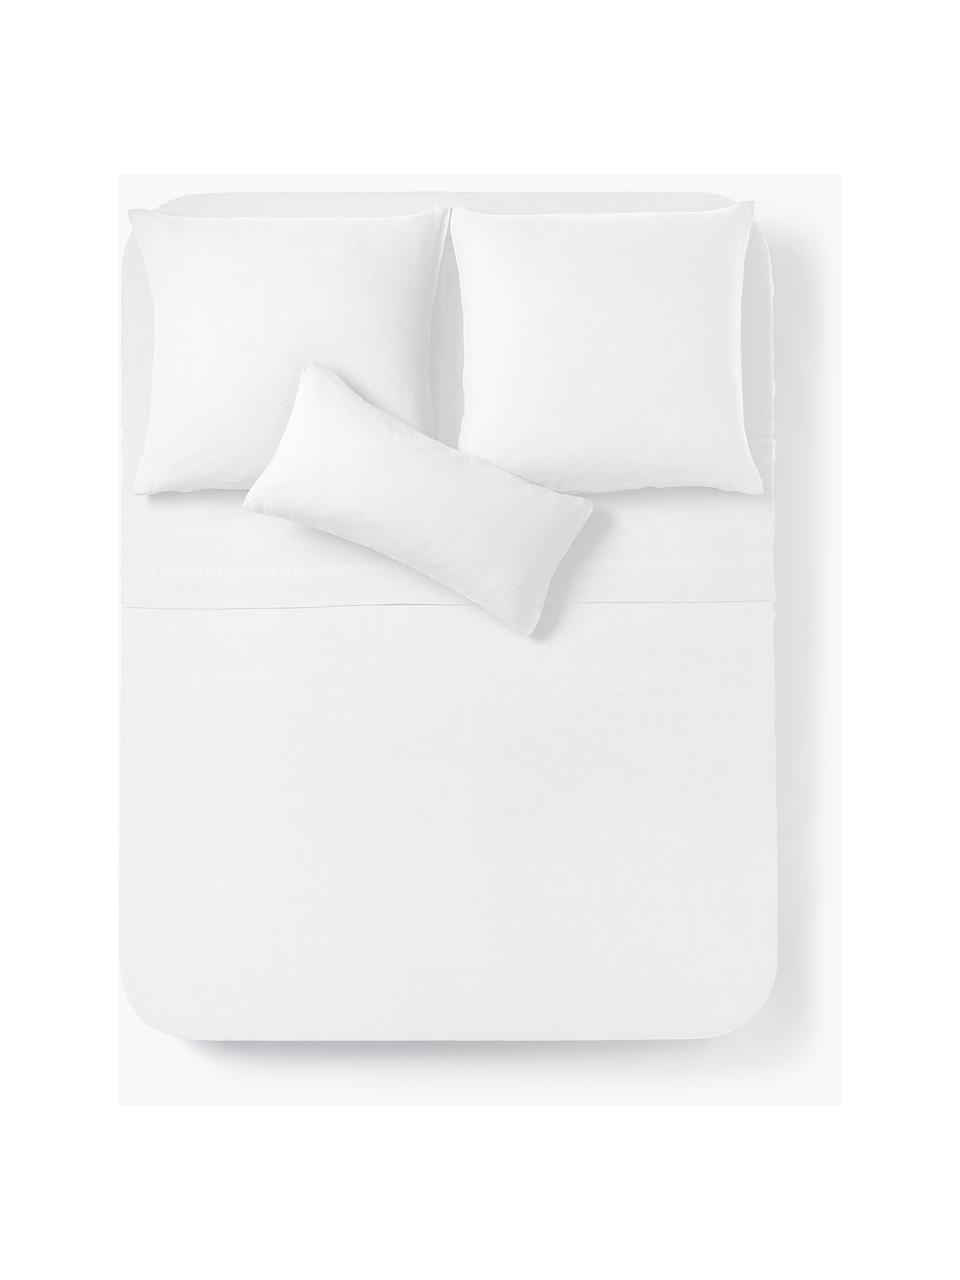 Gewaschenes Leinen-Bettlaken Airy, Weiß, B 240 x L 280 cm